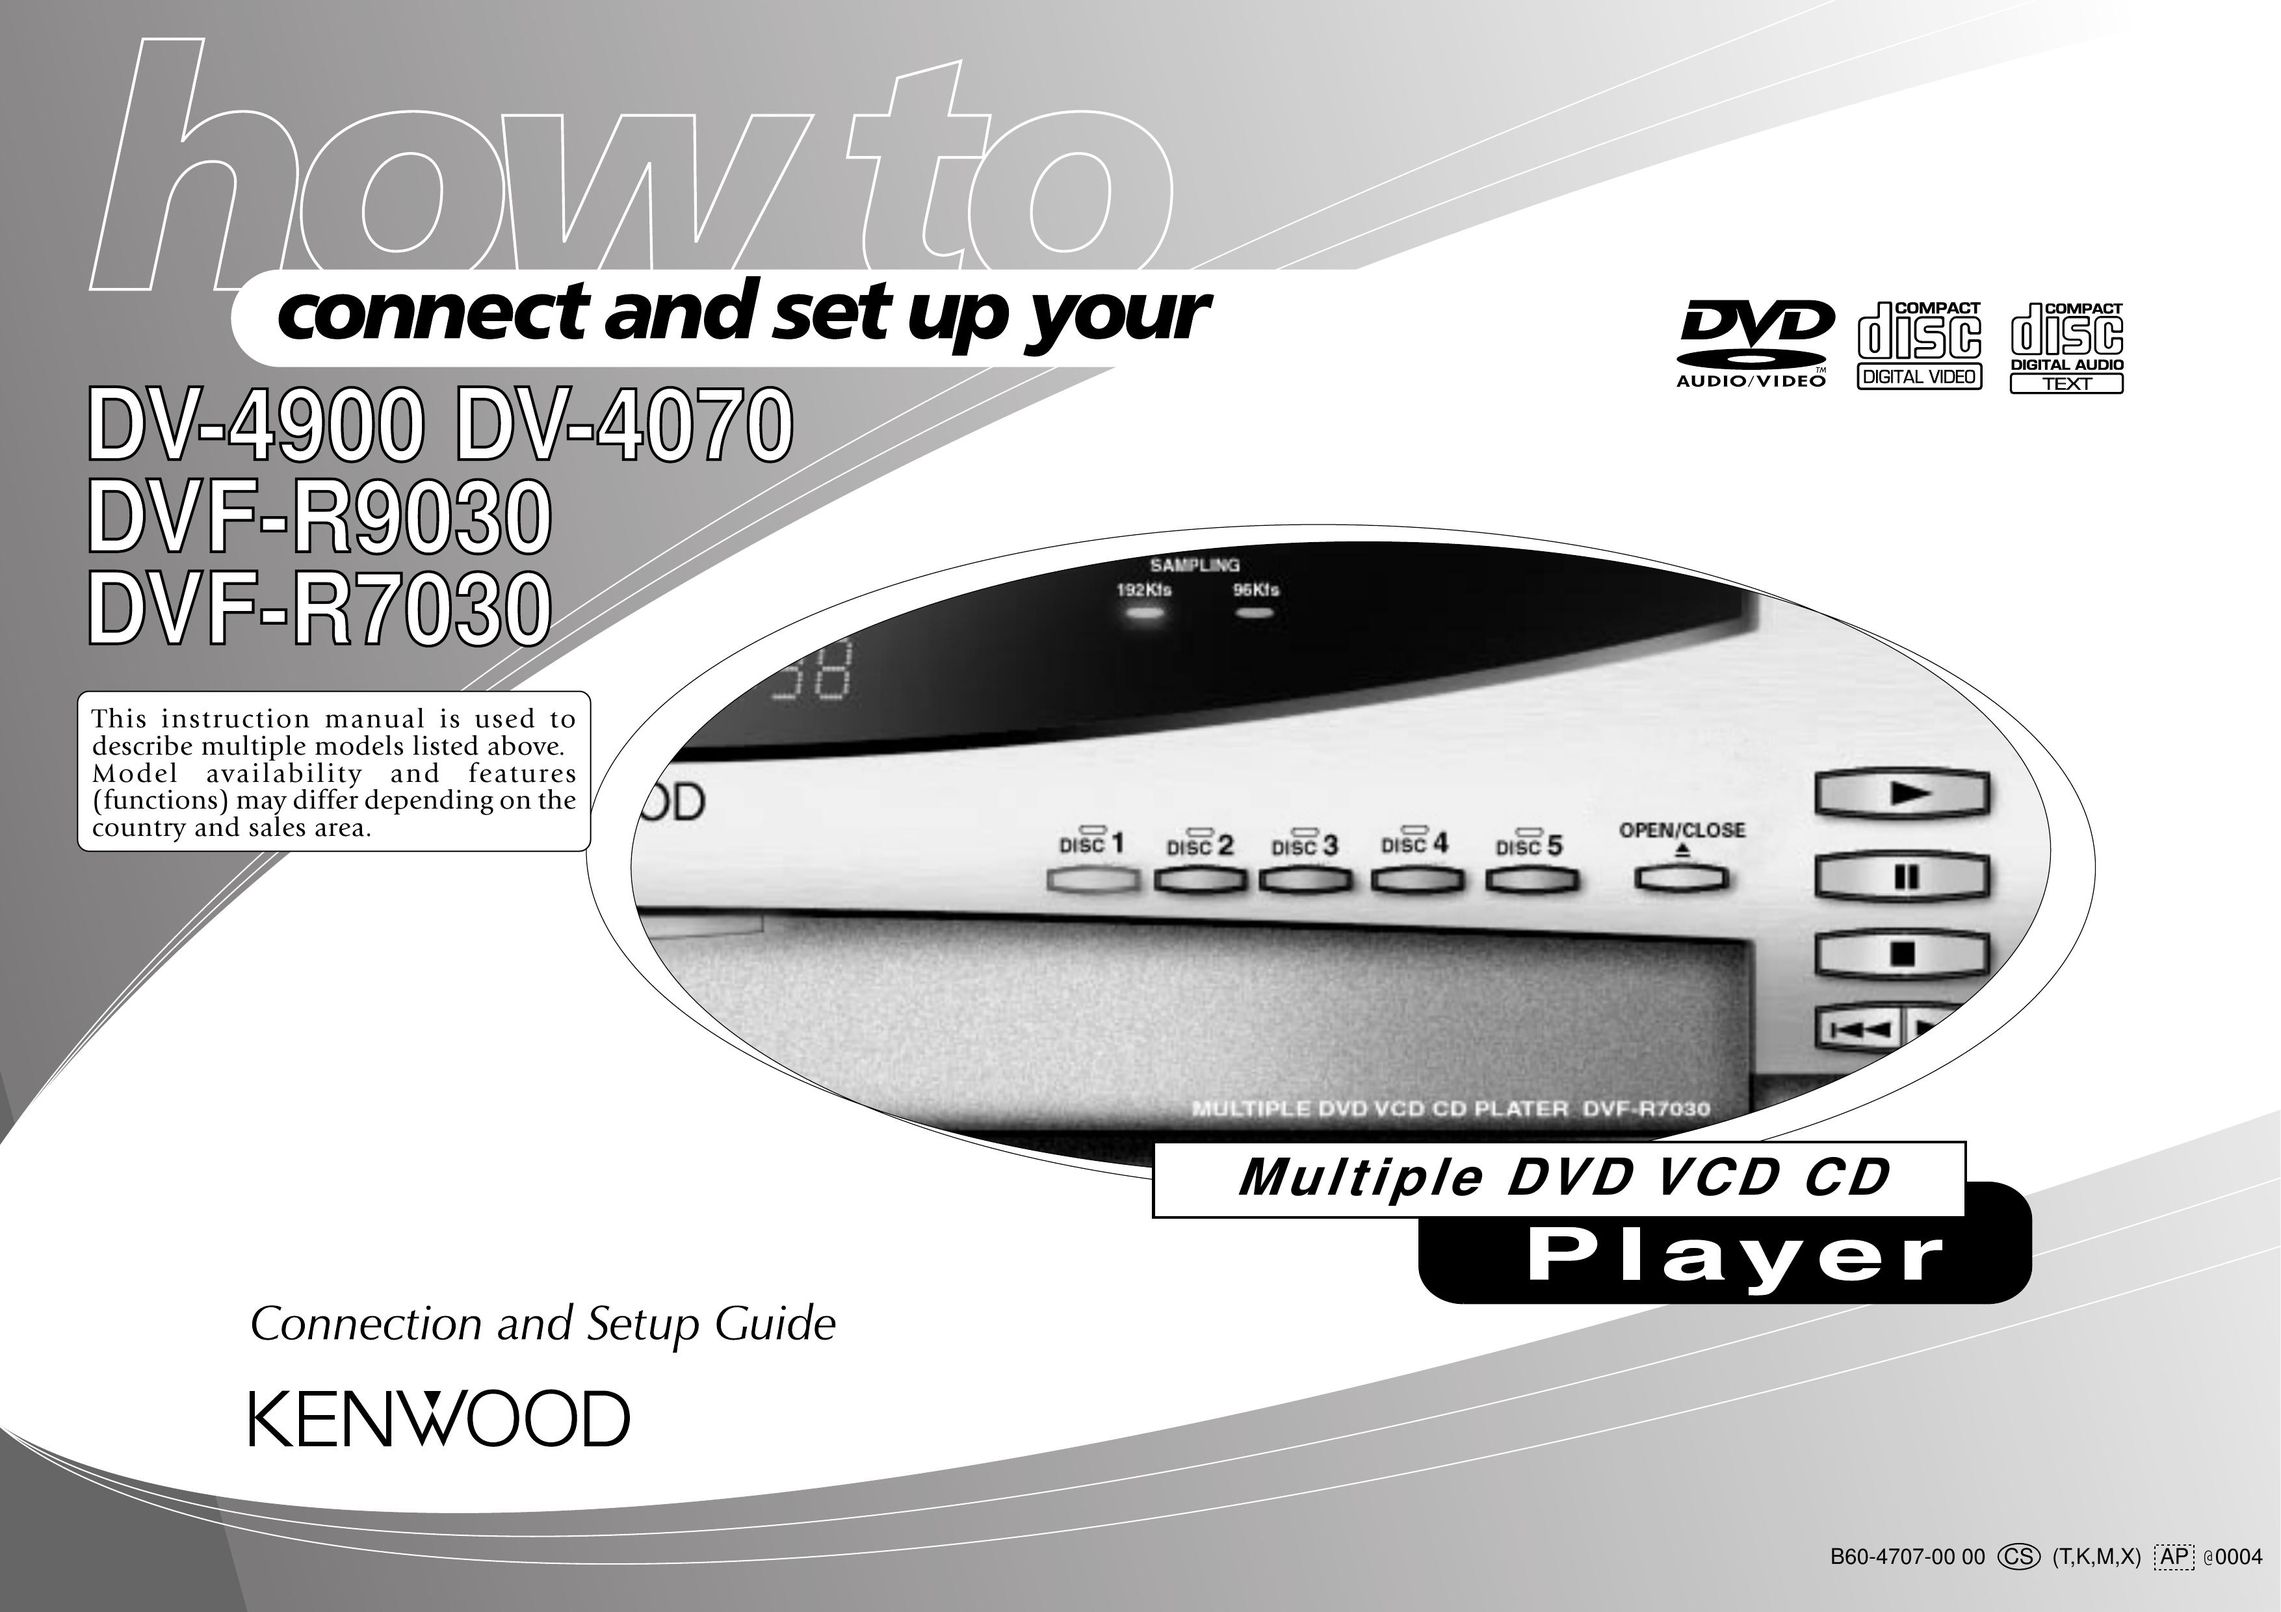 Kenwood DV-4900 DVD Player User Manual